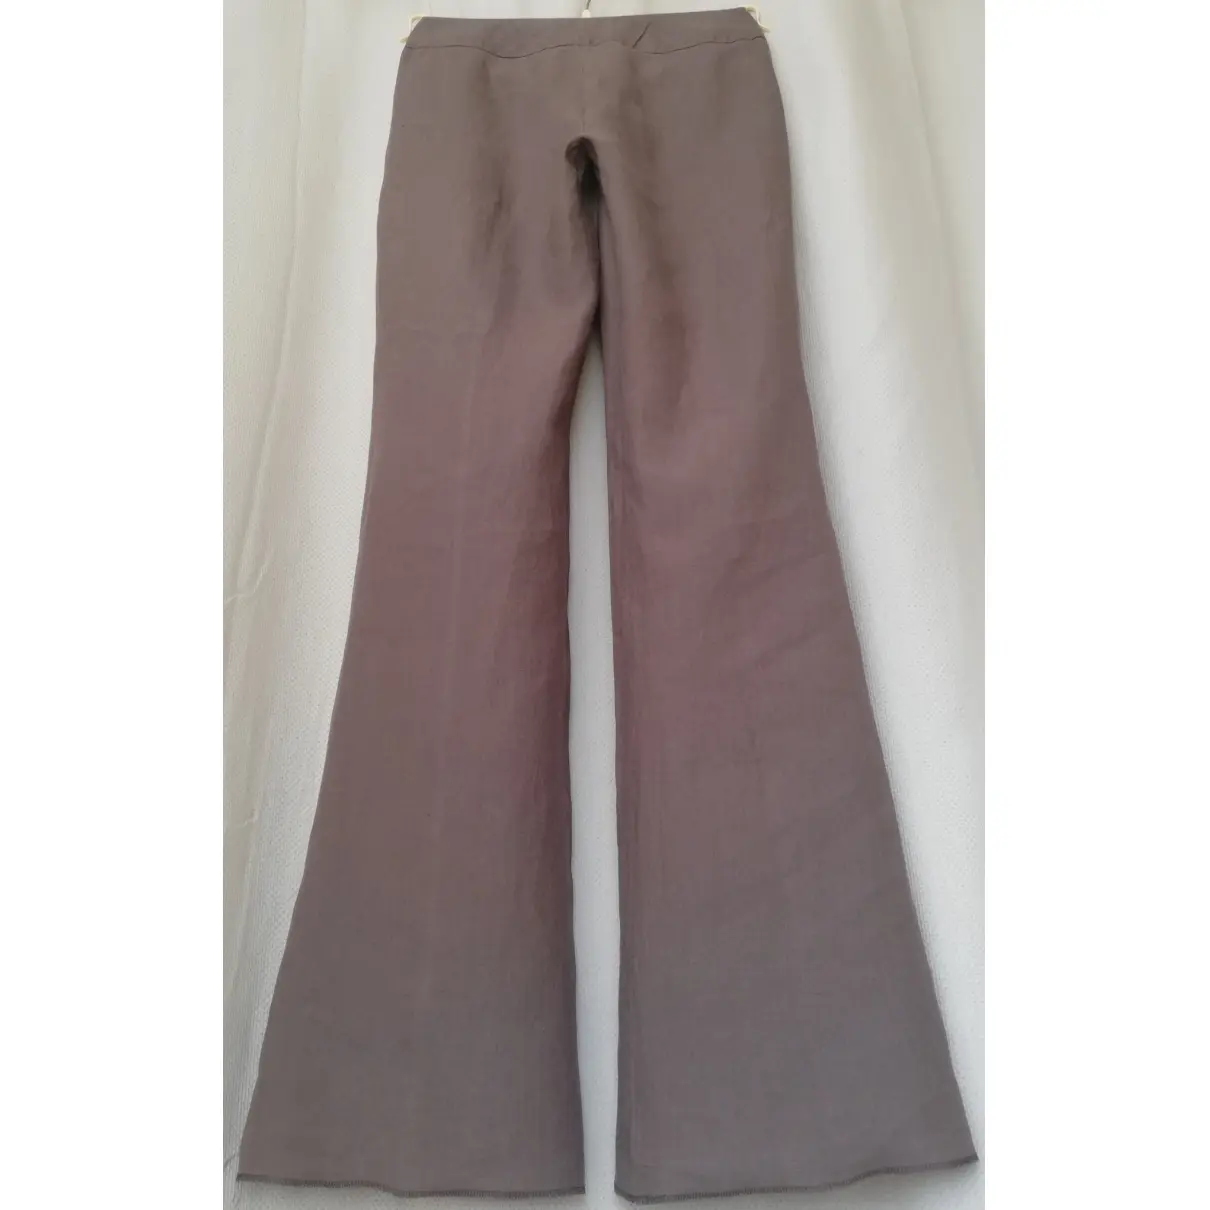 Linen large pants Max & Co